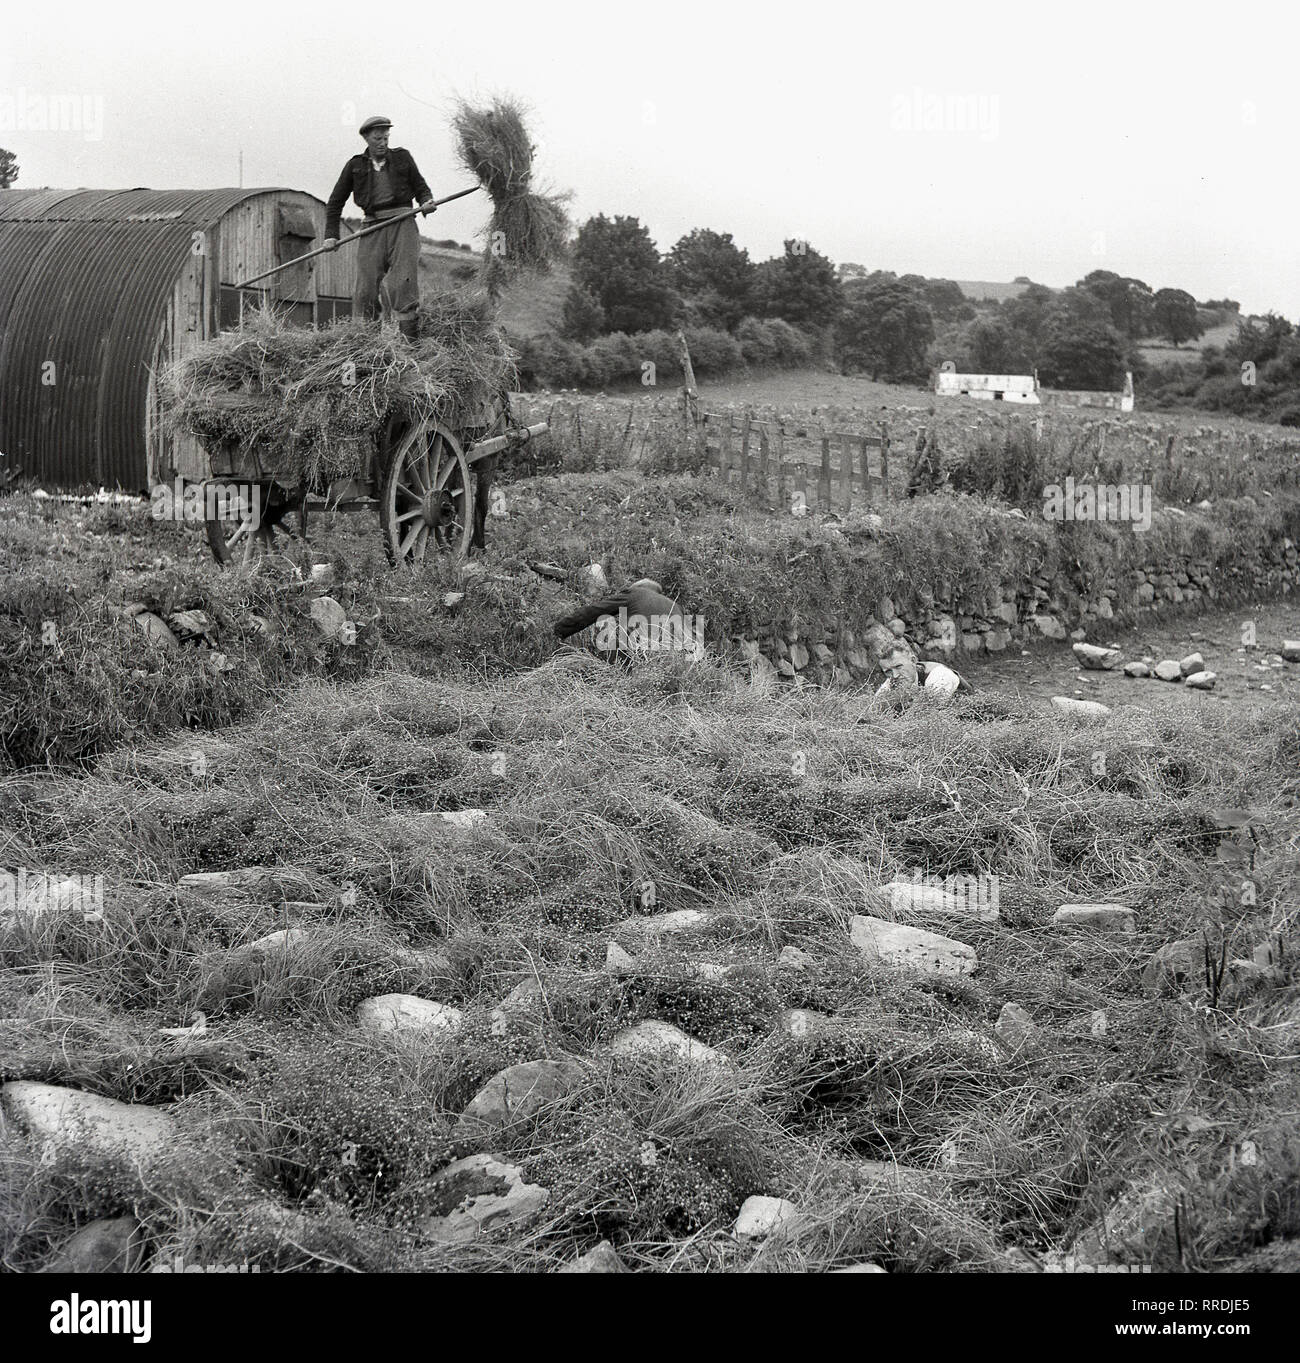 Années 1950, historique, un agriculteur irlandais debout sur une charrette le déchargement des bottes de lin, récemment rentrée d'Irlande du Nord. Le lin est à la fois une culture vivrière et fibres et utilisé pour la fabrication de tissu en lin, un produit majeur de l'Irlande du Nord à cette époque. Banque D'Images